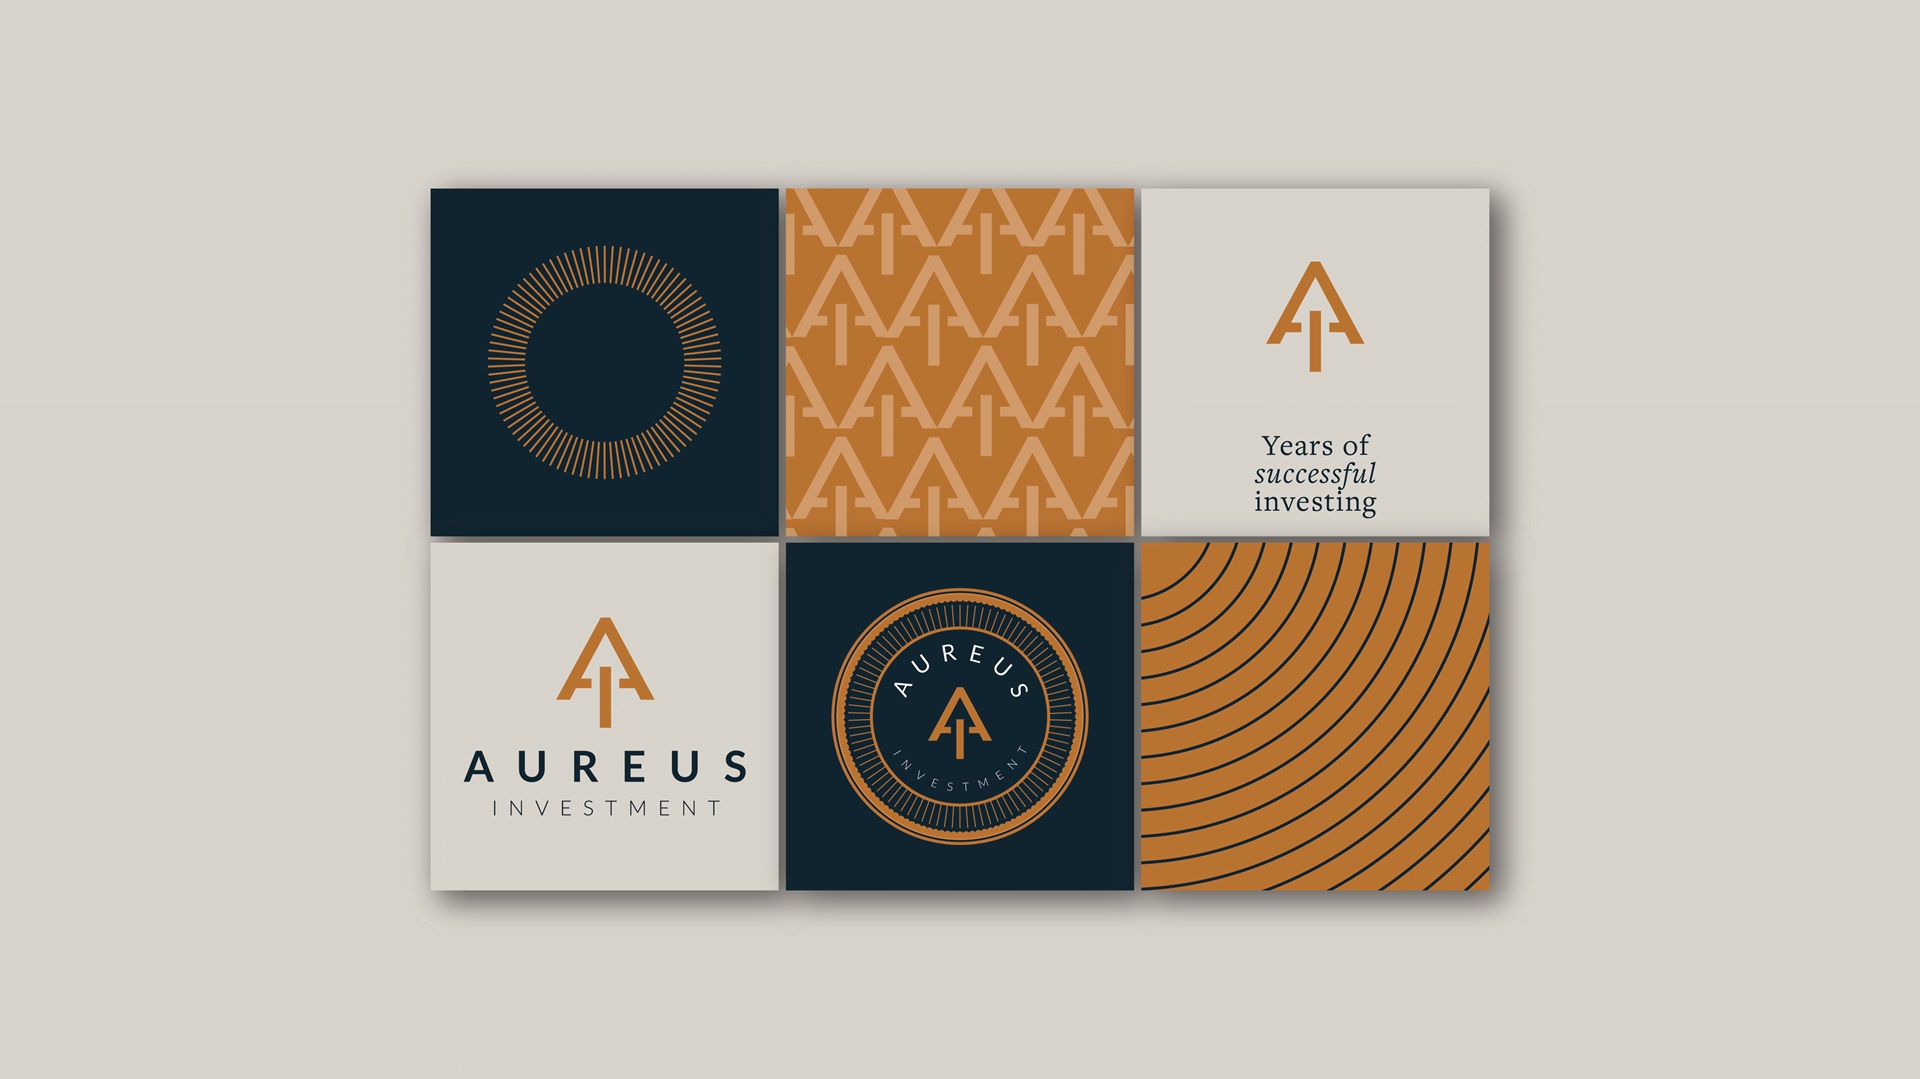 Aureus Investment - Green Goose Design